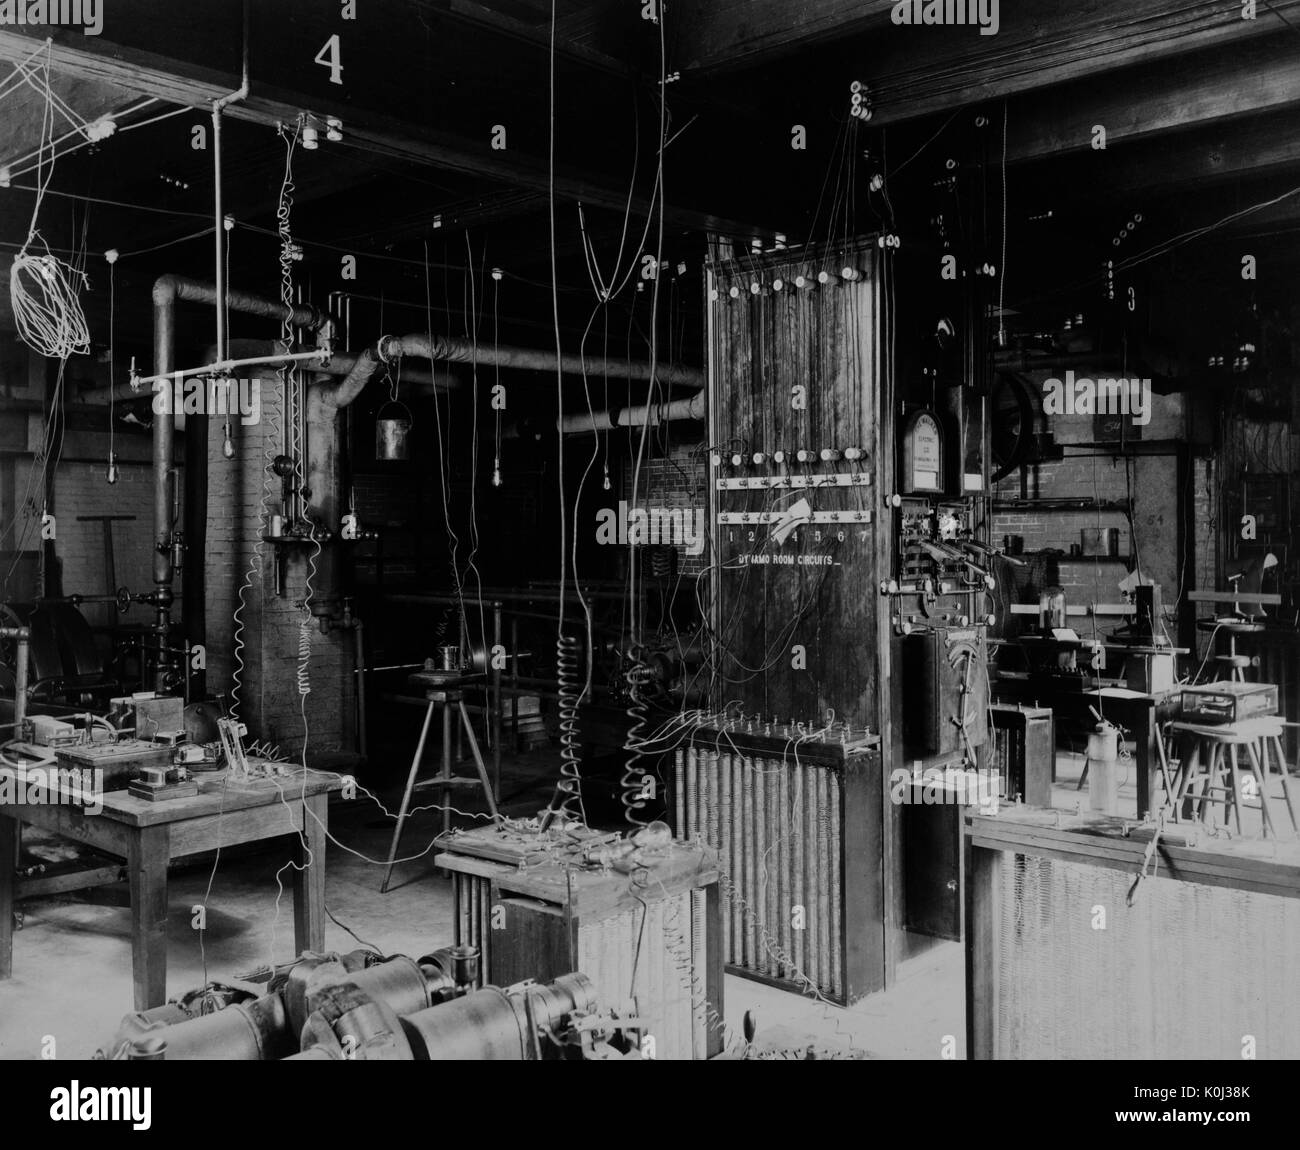 Immagine che mostra la parte interna della camera dinamo in Johns Hopkins University campus vecchio gabinetto di fisica edificio, 1890. Foto Stock